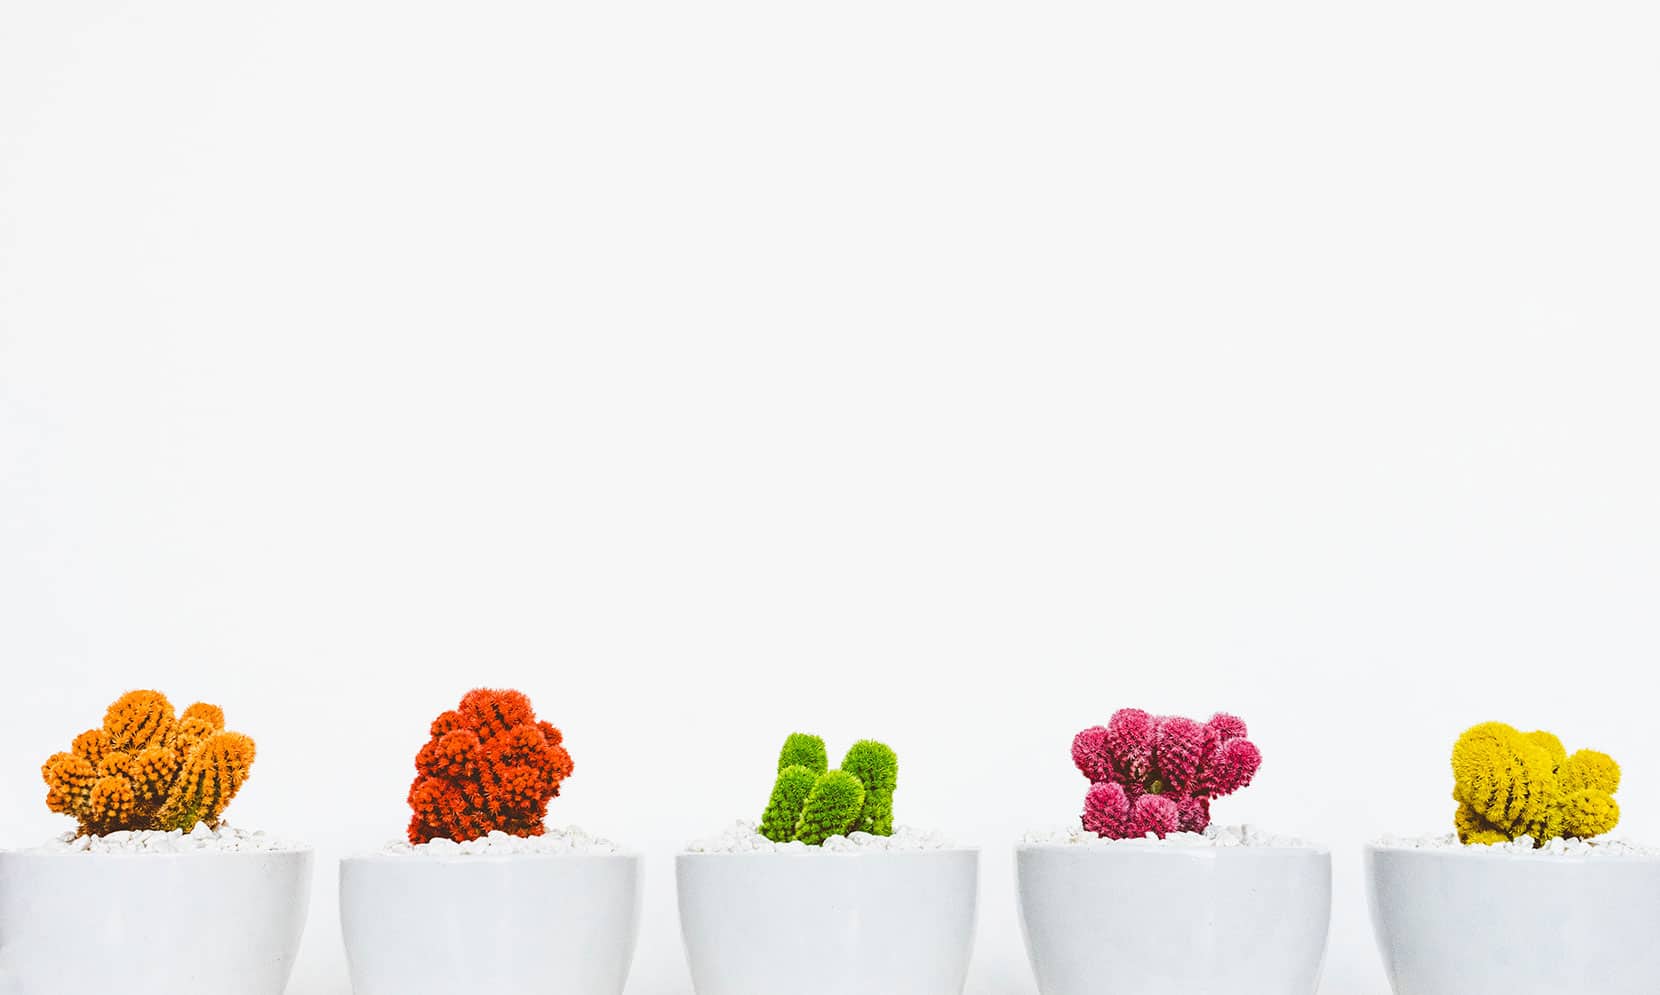 Colored cactus